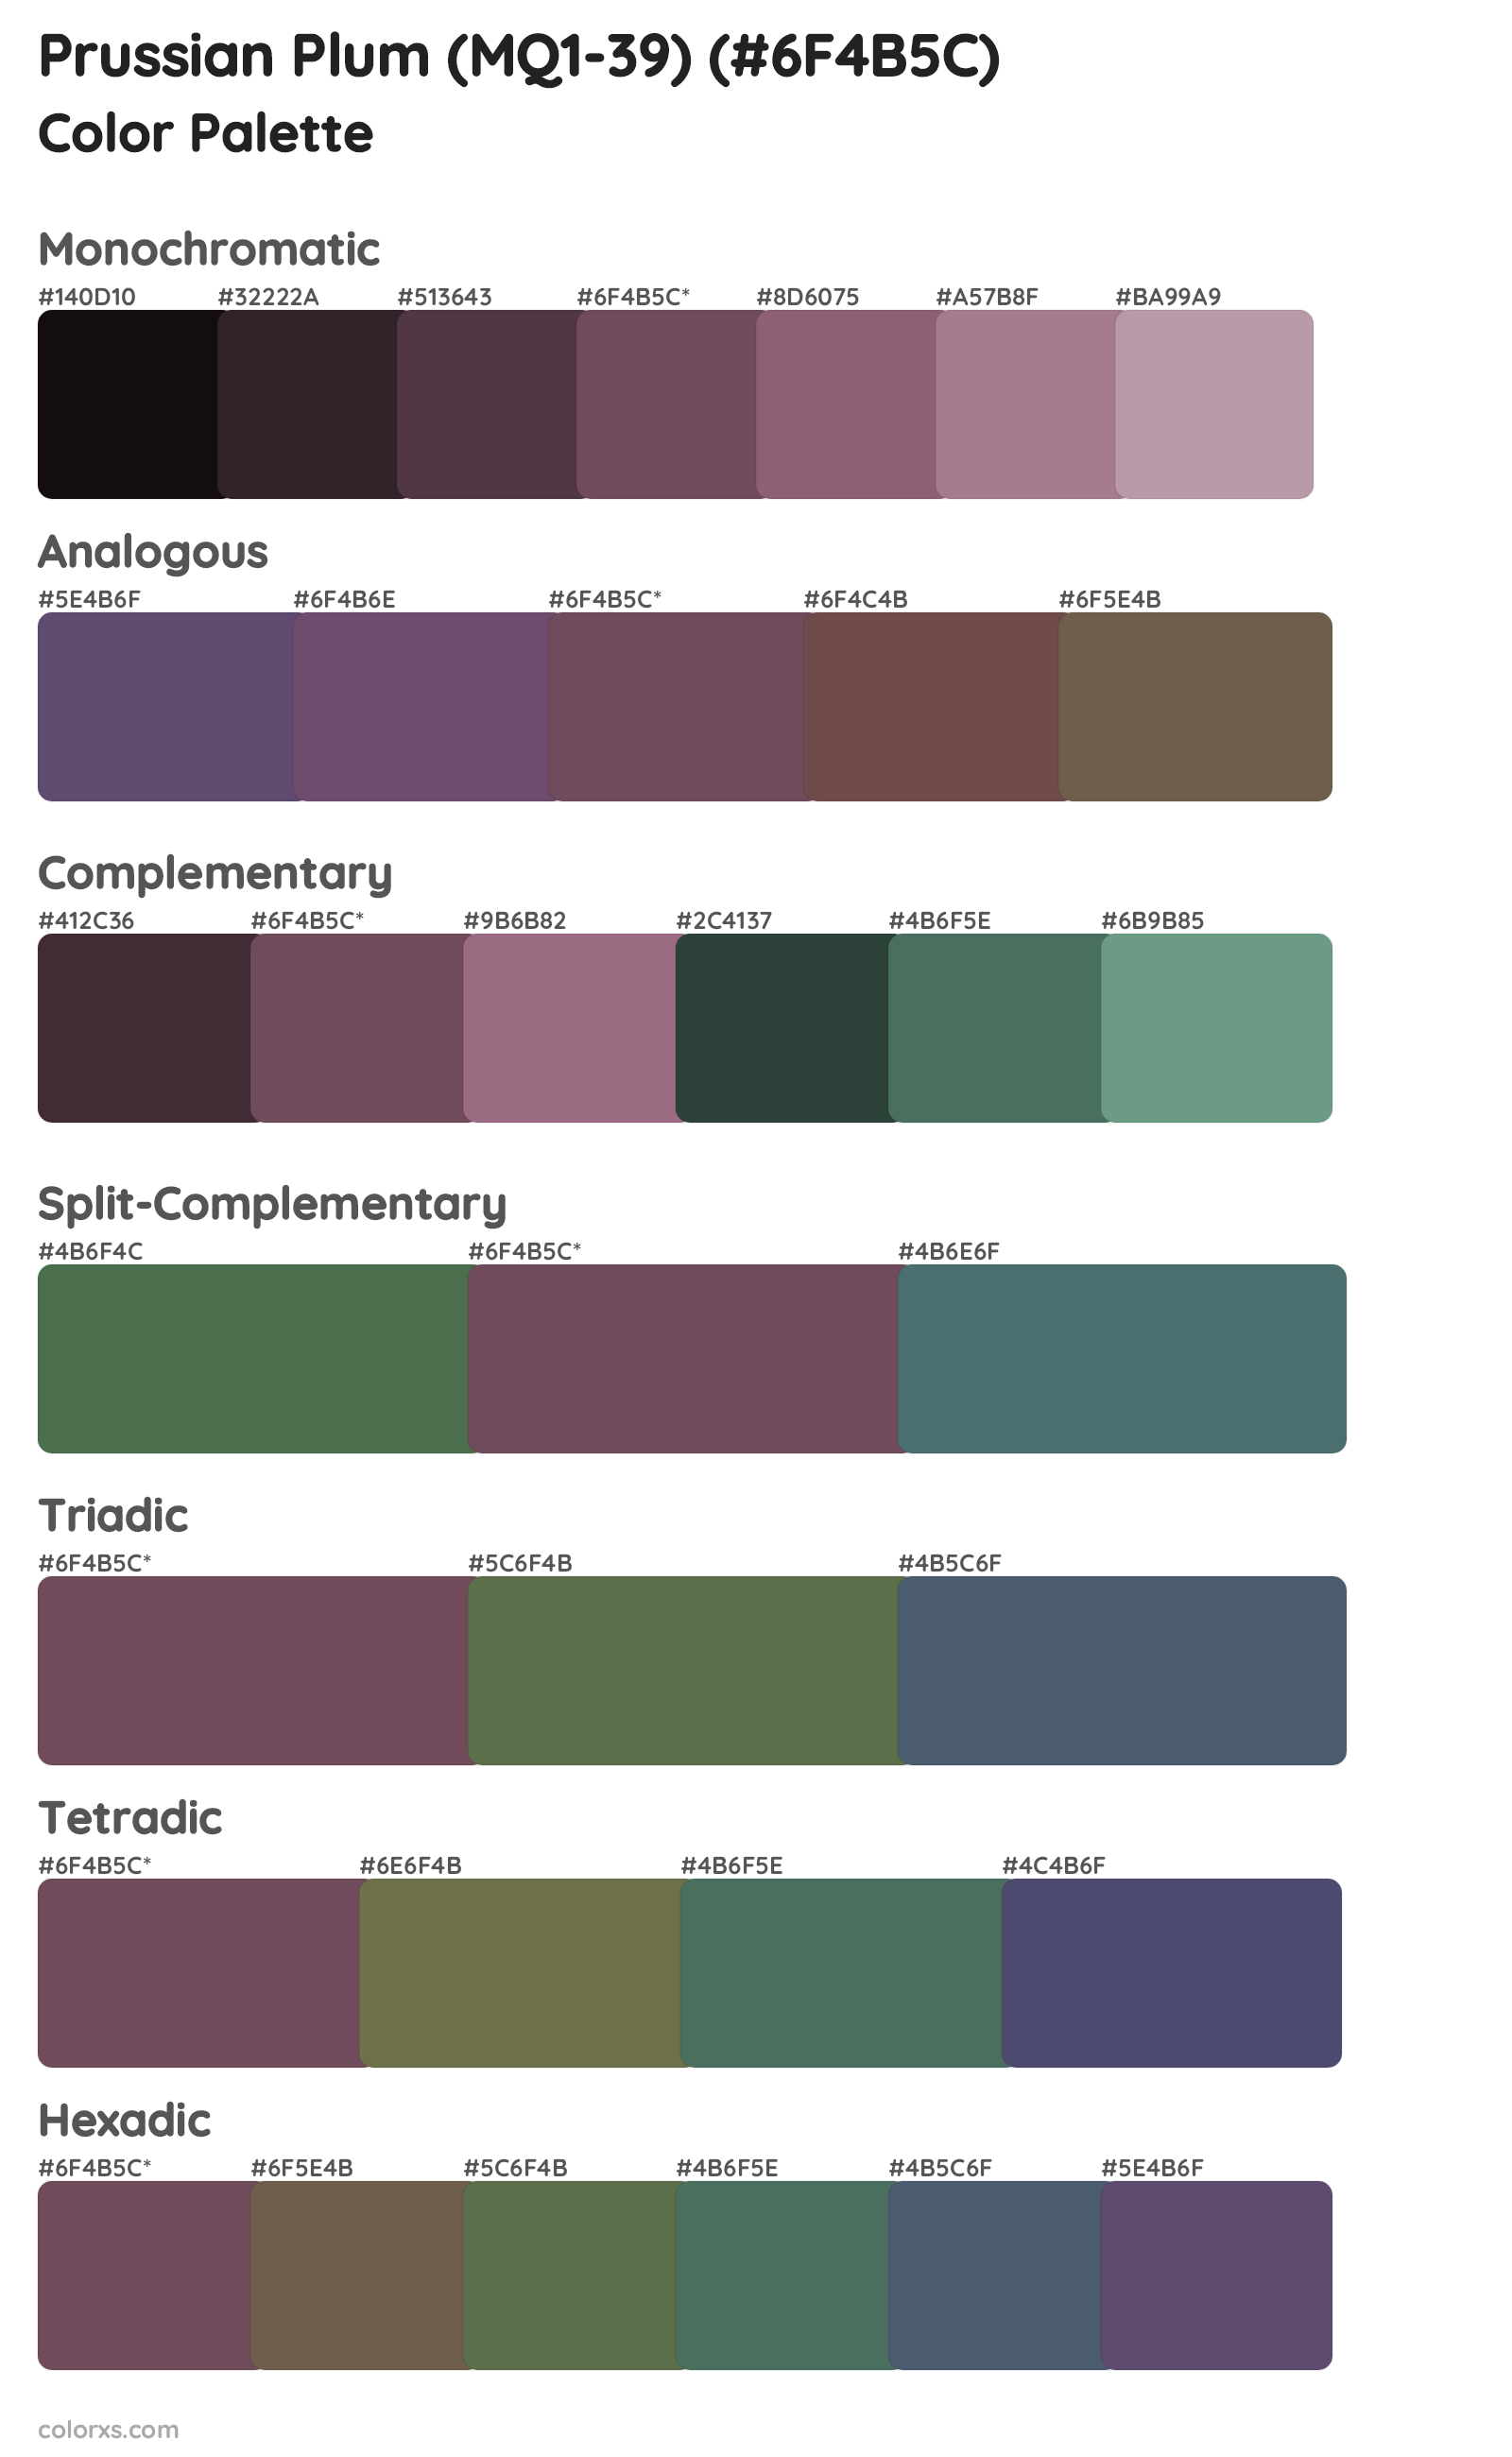 Prussian Plum (MQ1-39) Color Scheme Palettes